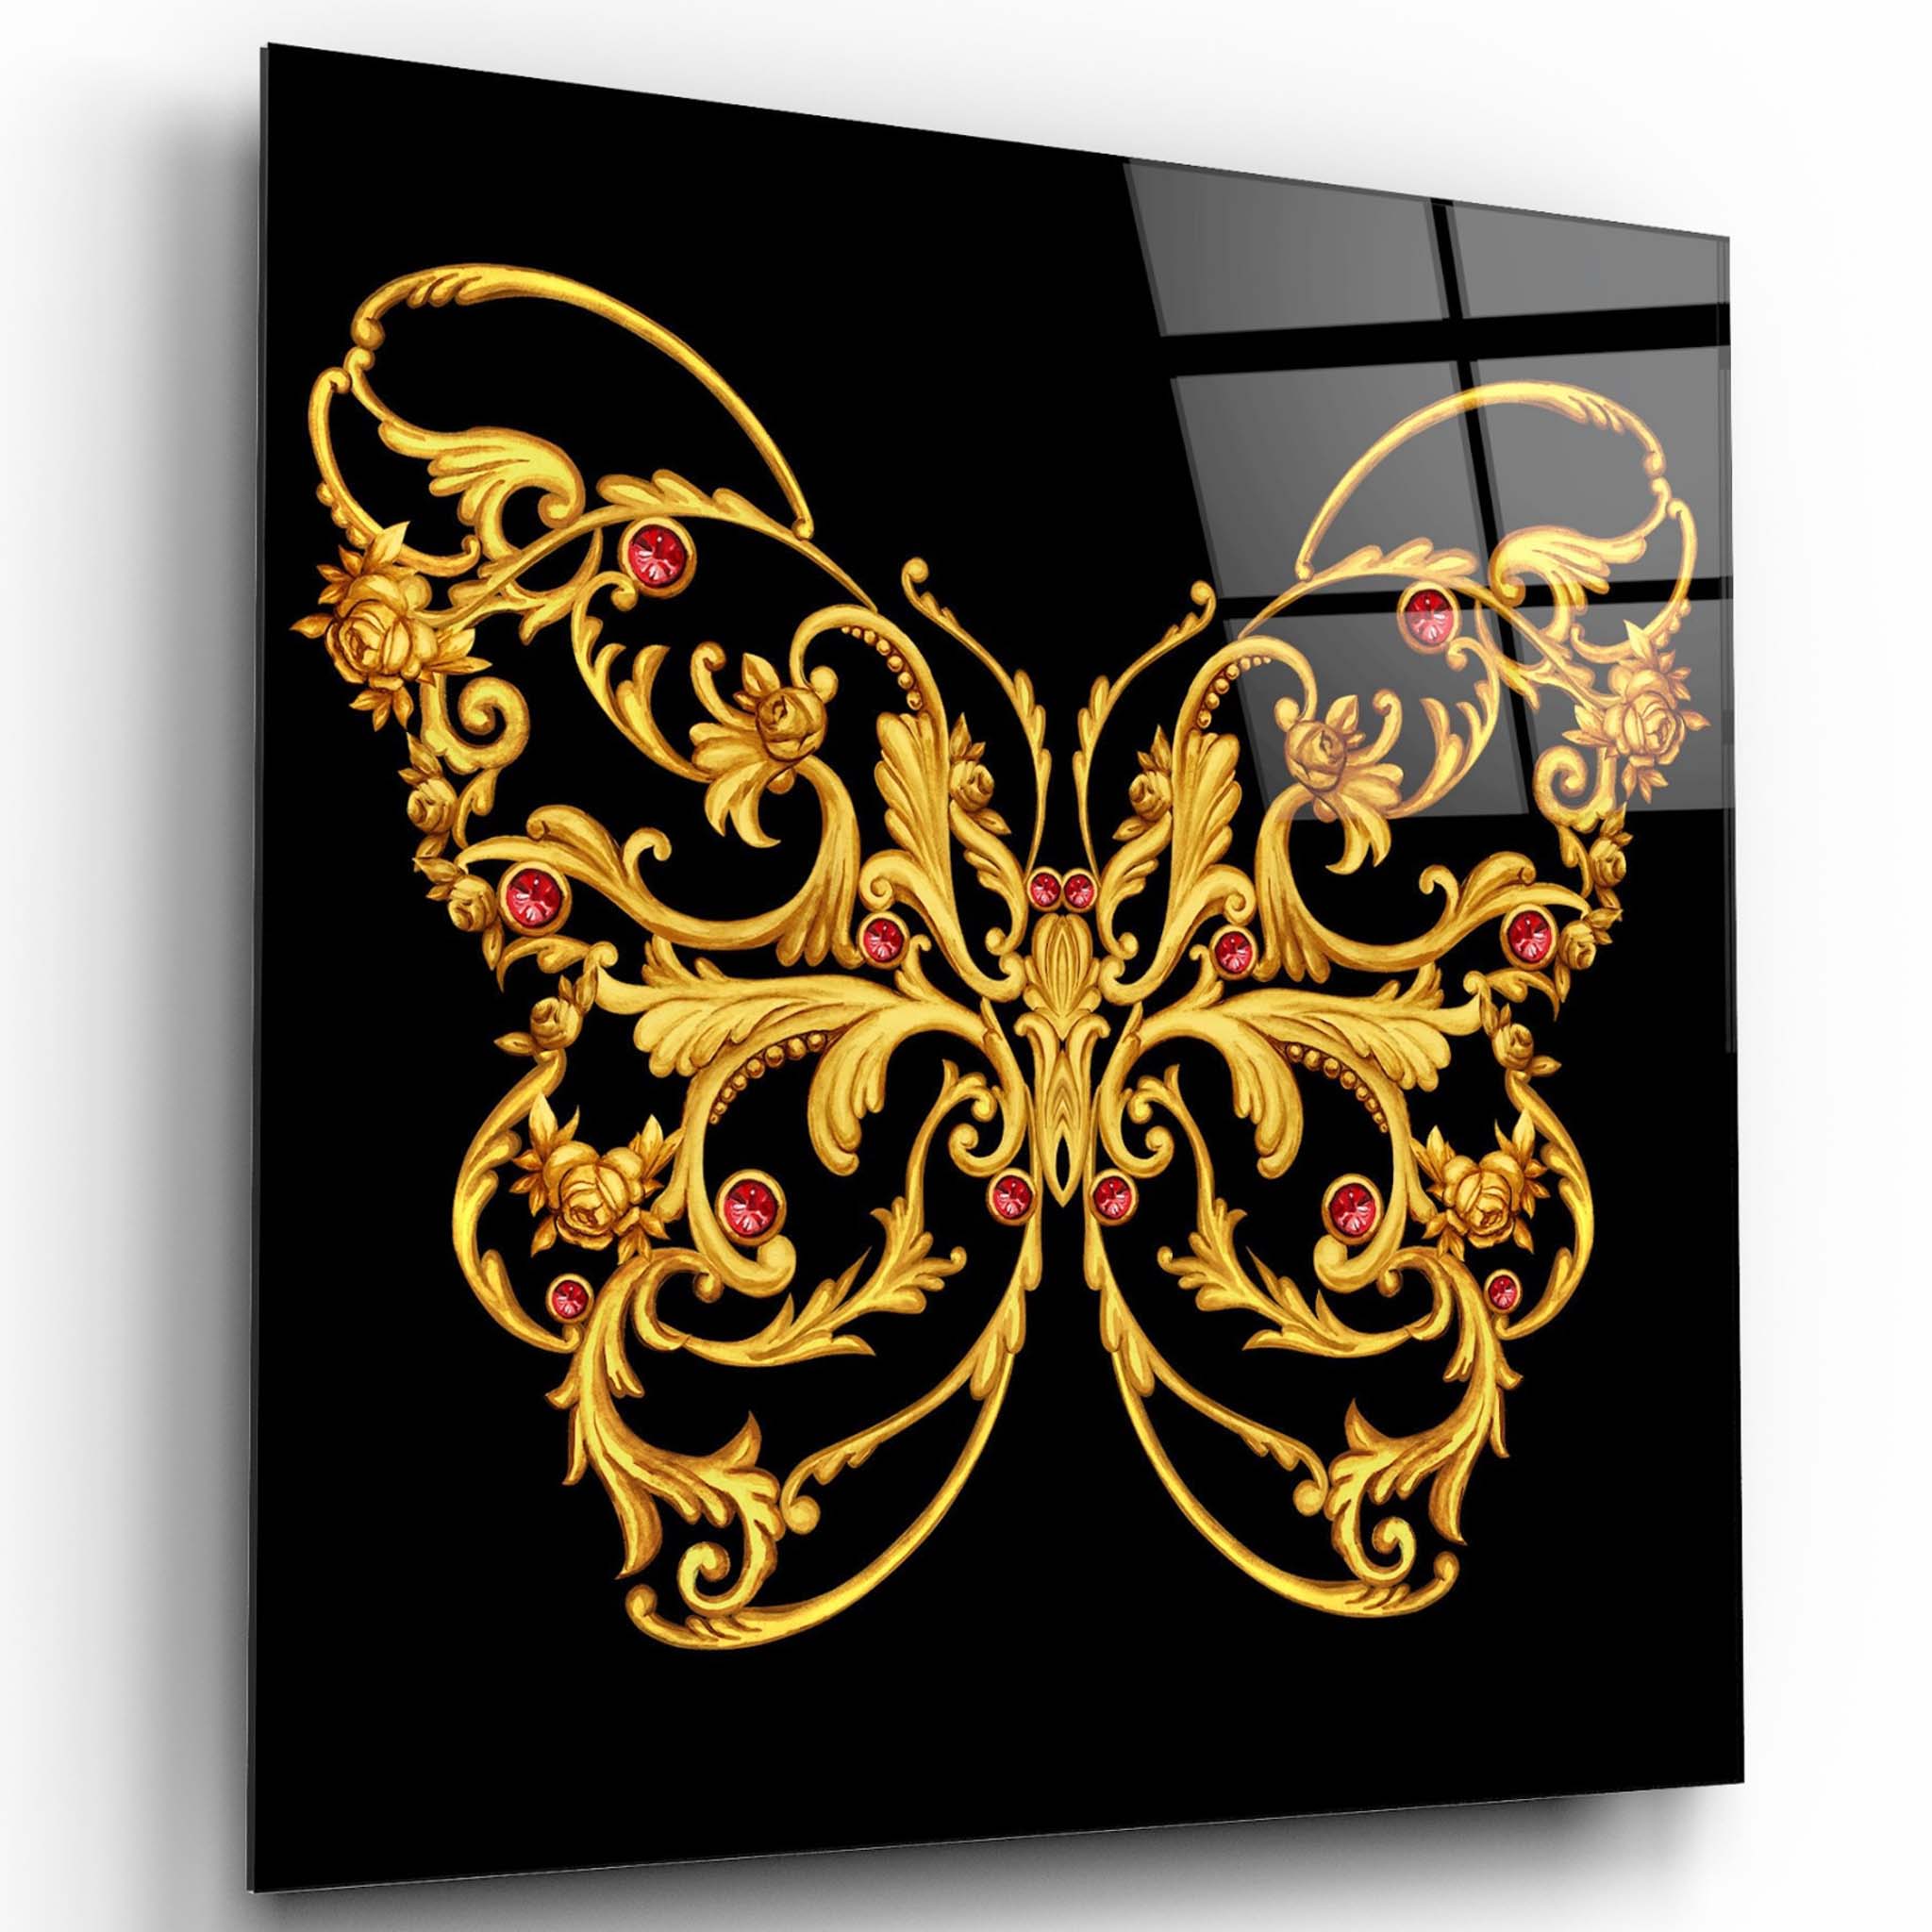 Butterfly Glass Wall Art 5